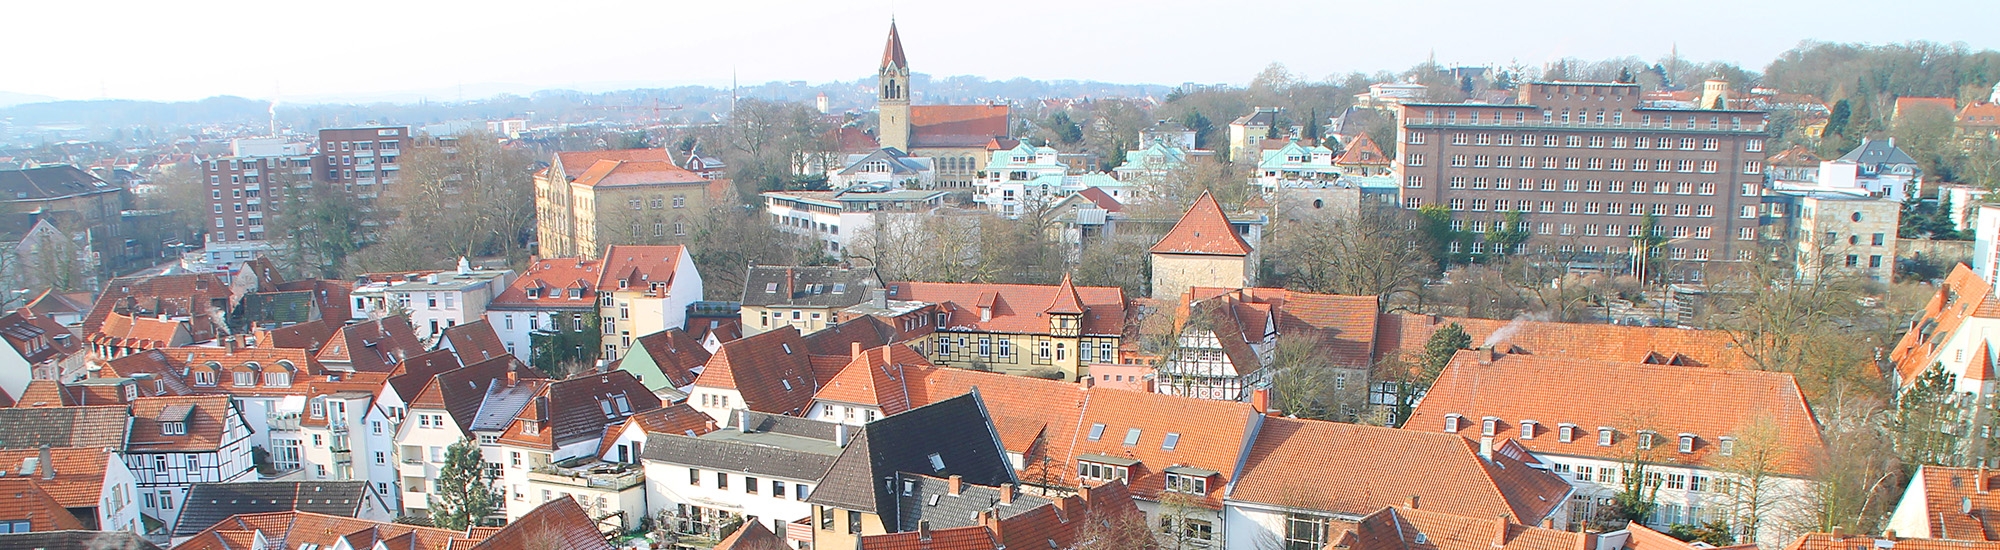 Immobilien Osnabrück